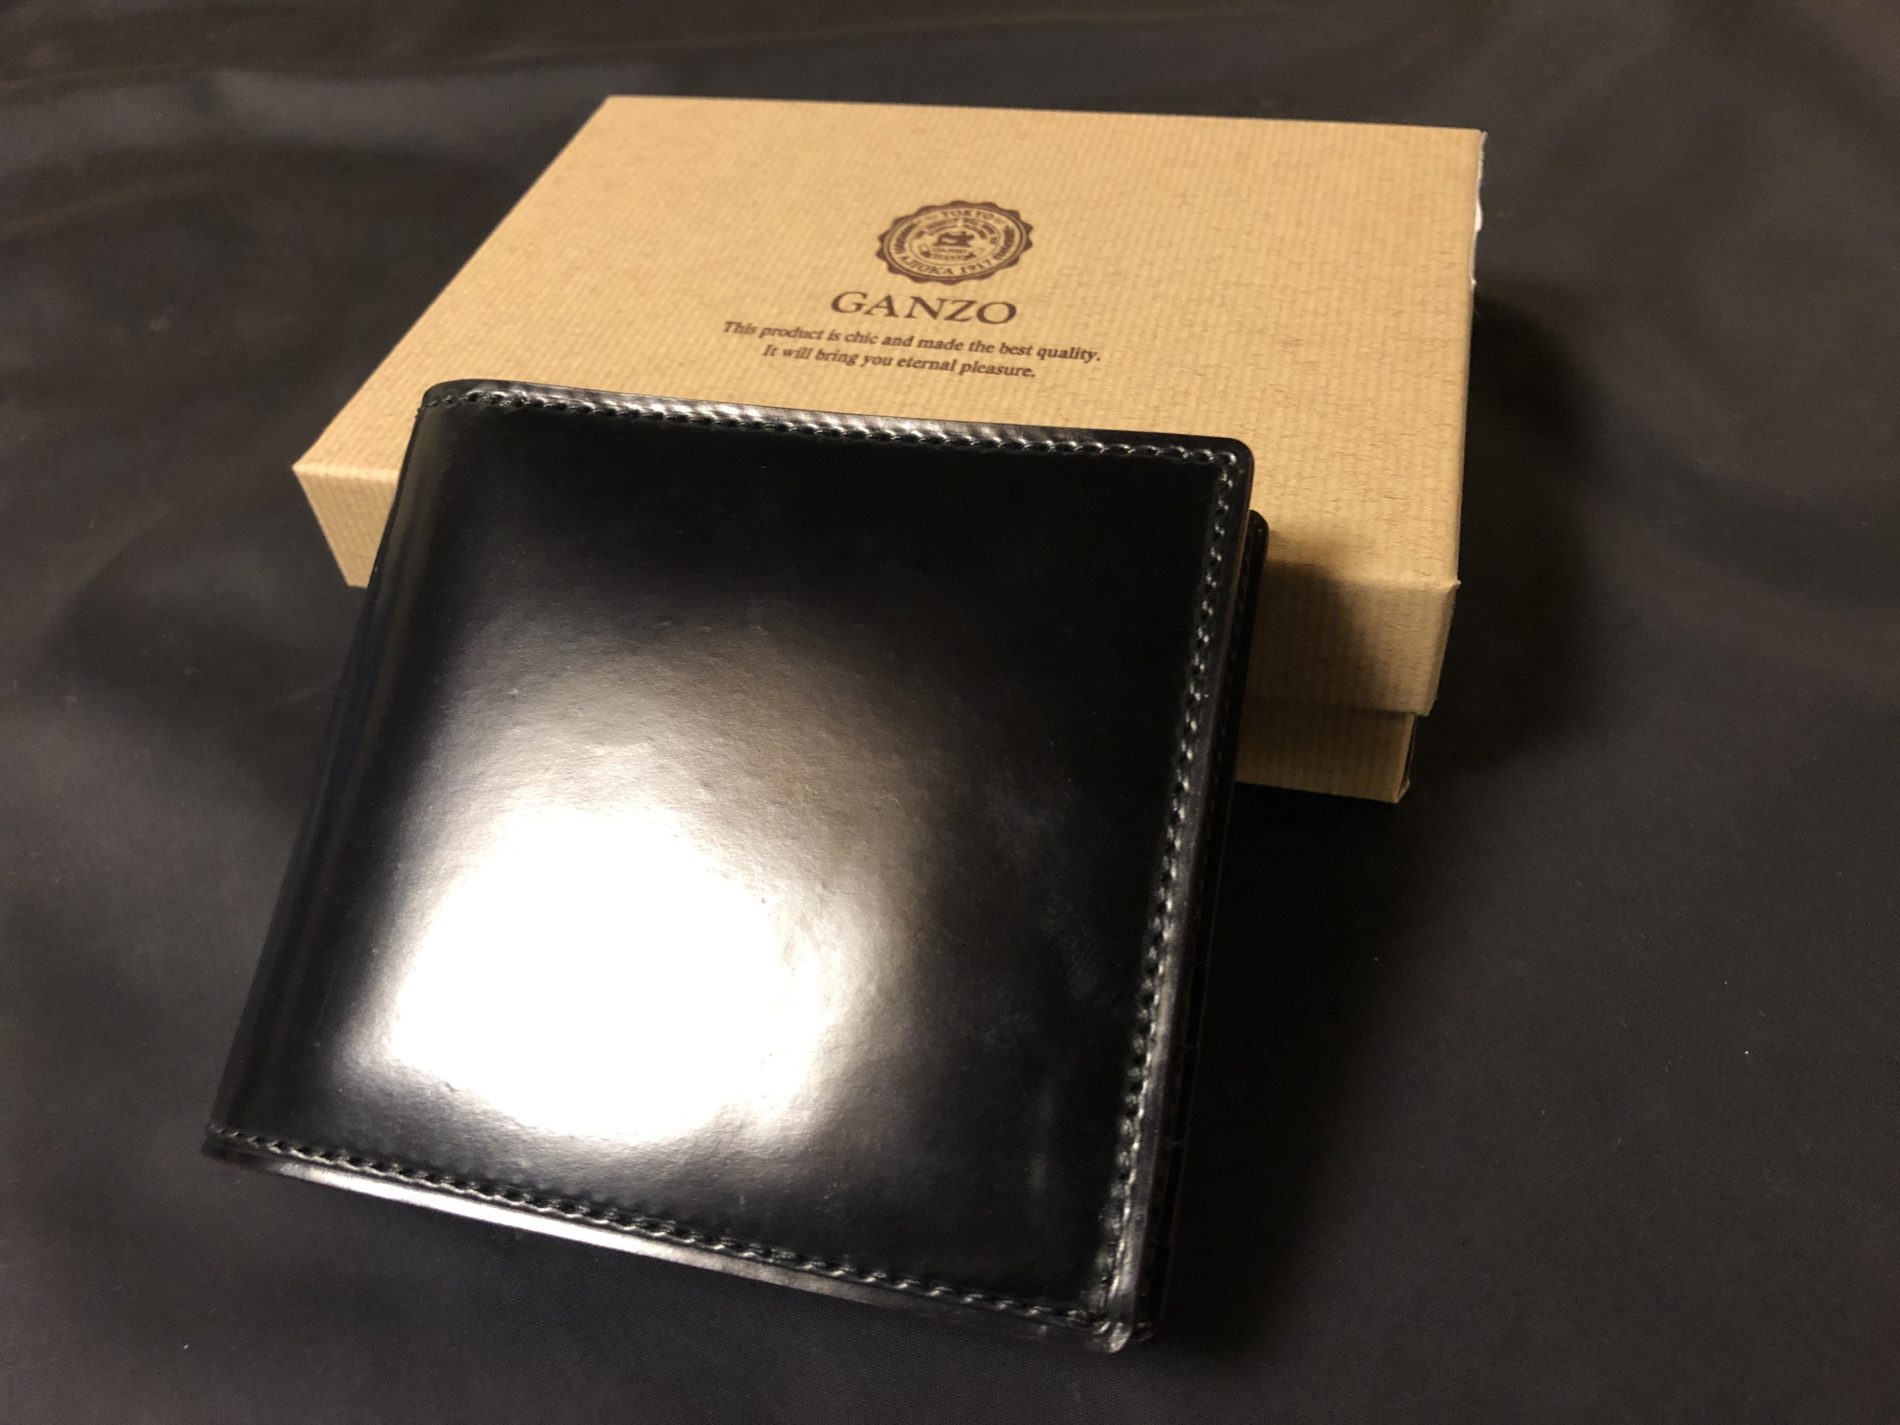 GANZO ガンゾ シェルコードバン2 ブラック 小銭入れ付き 二つ折り財布